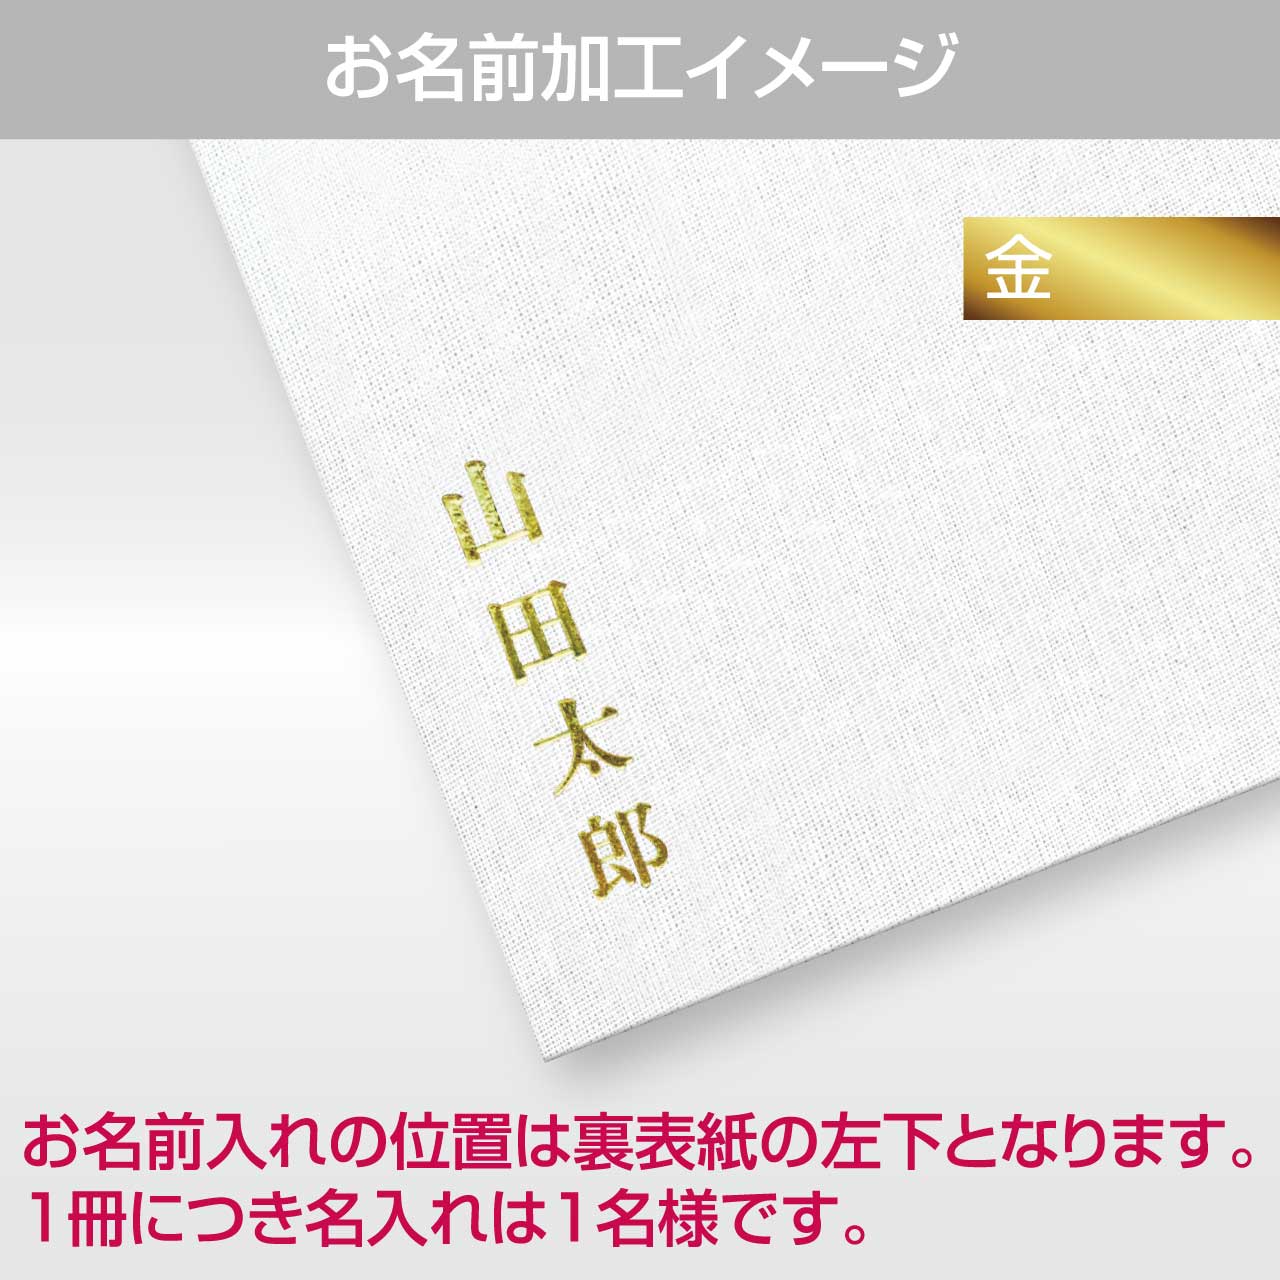 Goshuin book "Golden Ichimatsu" Chitose Midori